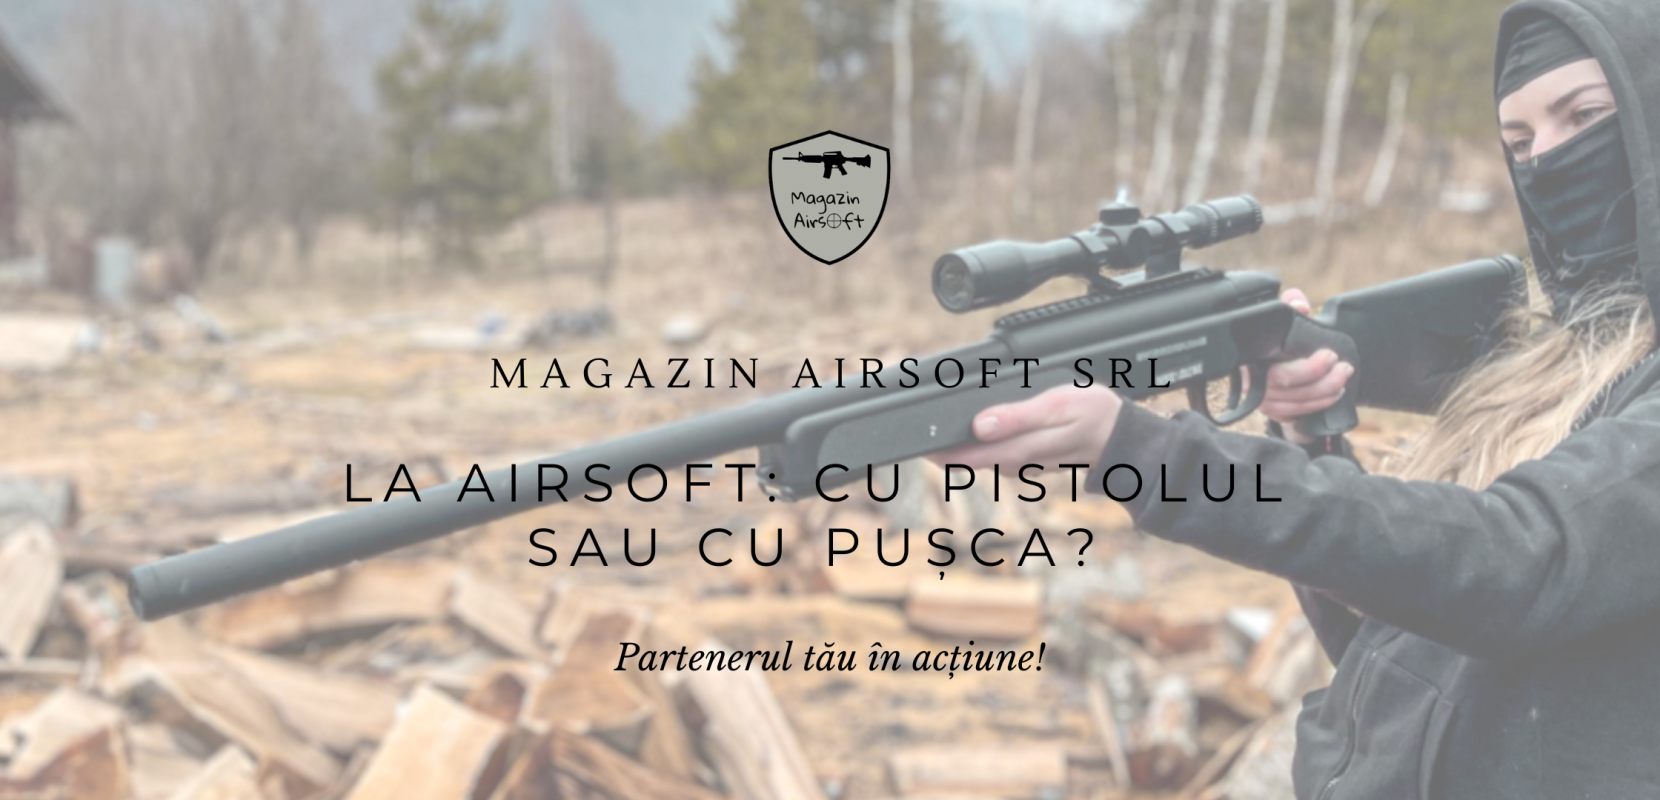 La Airsoft: Cu pistolul sau cu pusca?